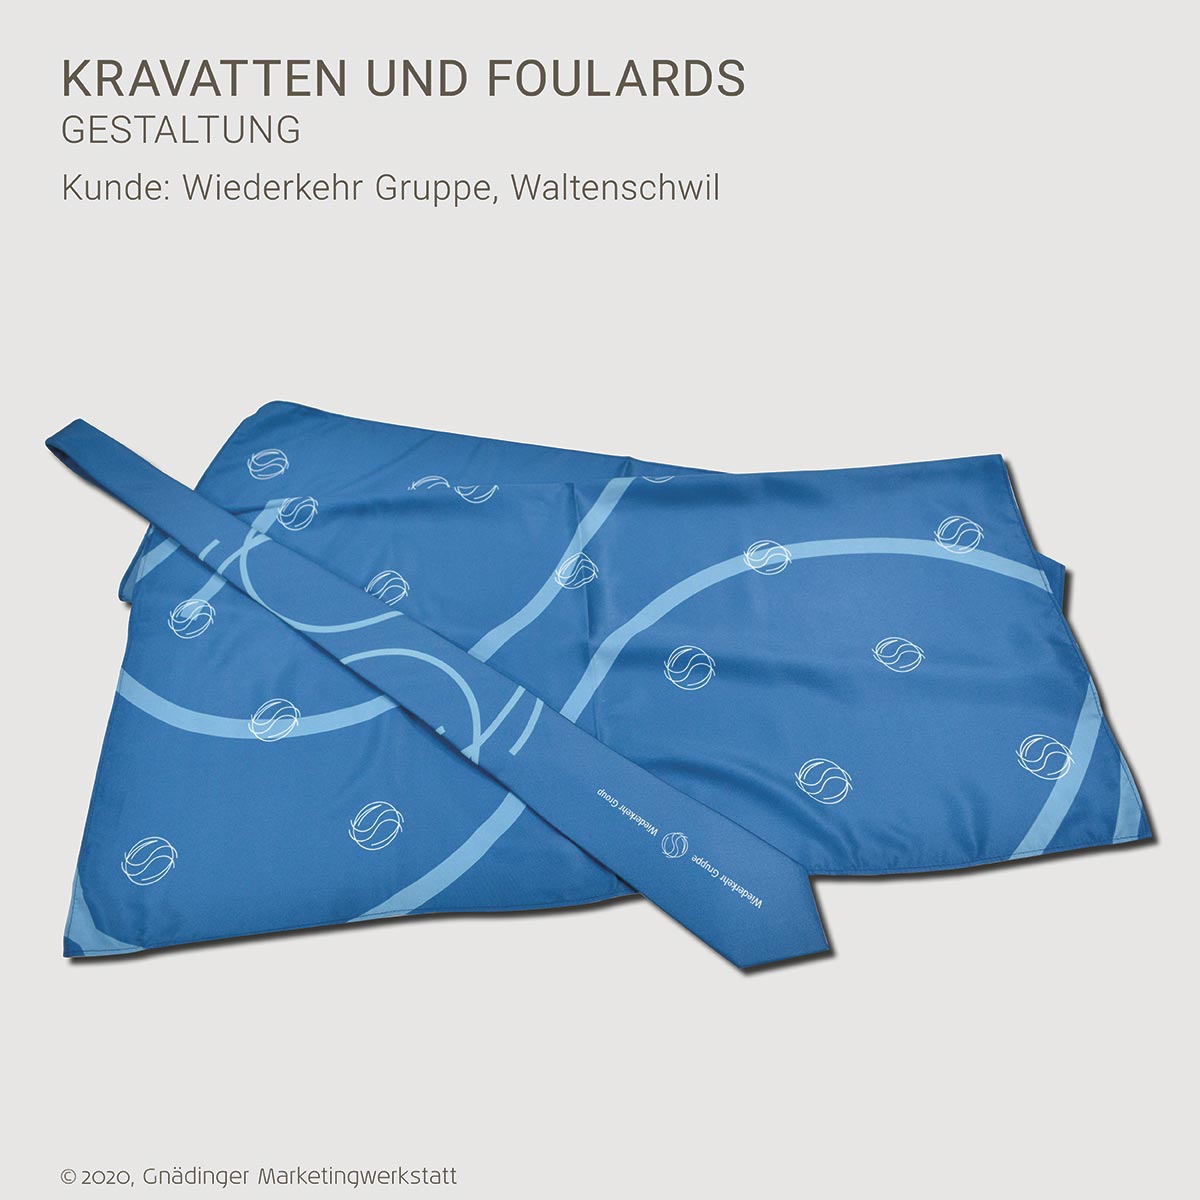 WEB1_GMW_Projekt_Wiederkehr-Recycling_Kravatten-Foulards_11-2020